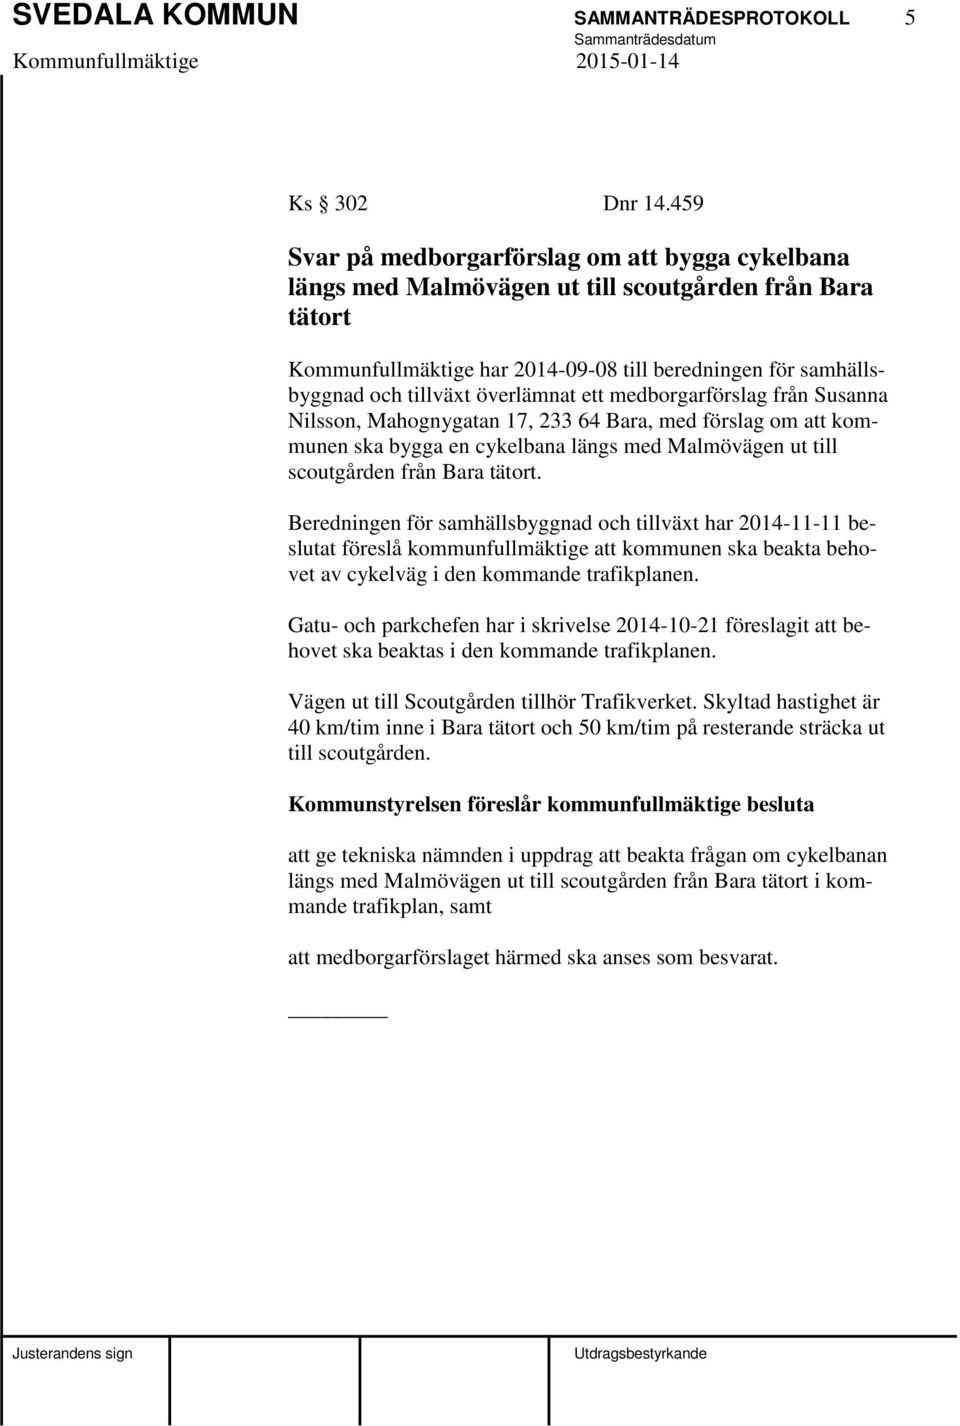 överlämnat ett medborgarförslag från Susanna Nilsson, Mahognygatan 17, 233 64 Bara, med förslag om att kommunen ska bygga en cykelbana längs med Malmövägen ut till scoutgården från Bara tätort.